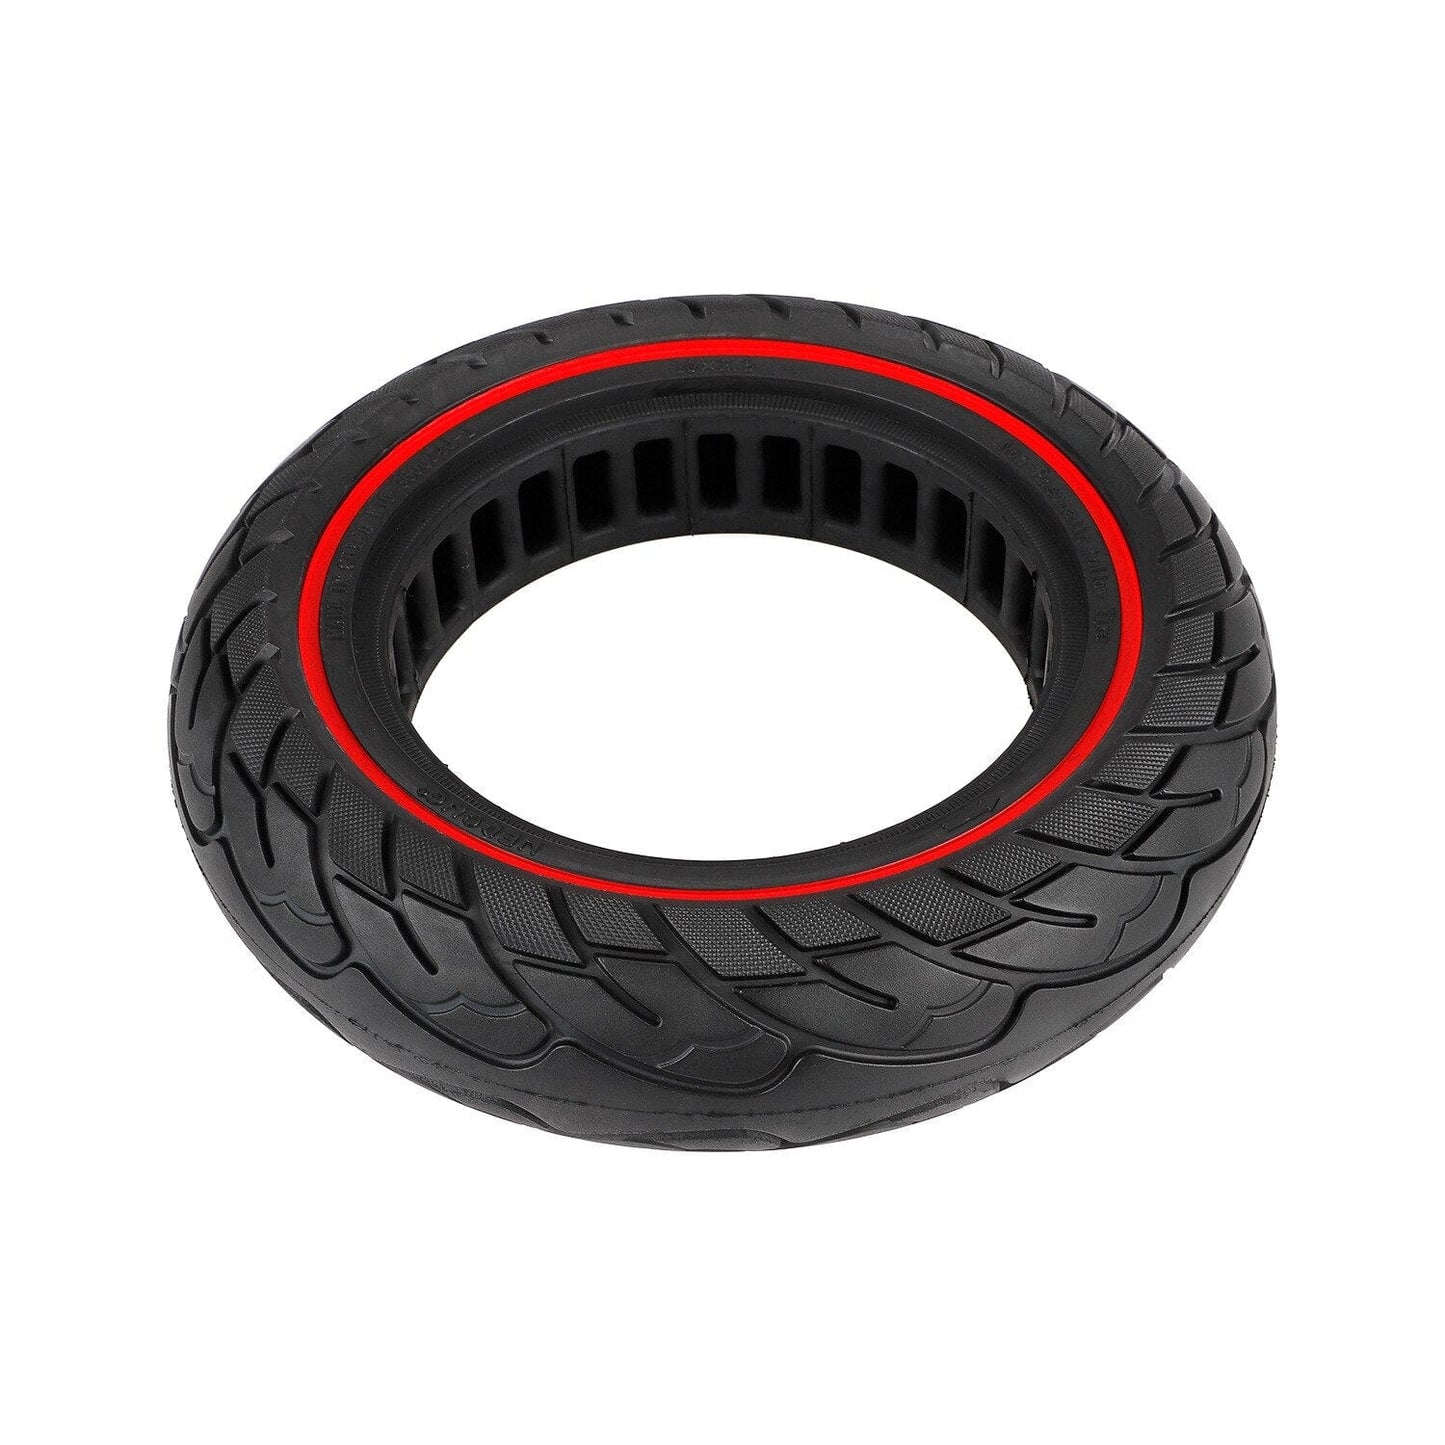 Däck 10" Semi-solida Ninebot G30 - Red Line Edition | Stiliga däck av gummi och färg i svart med röda detaljer | Wheely Shop